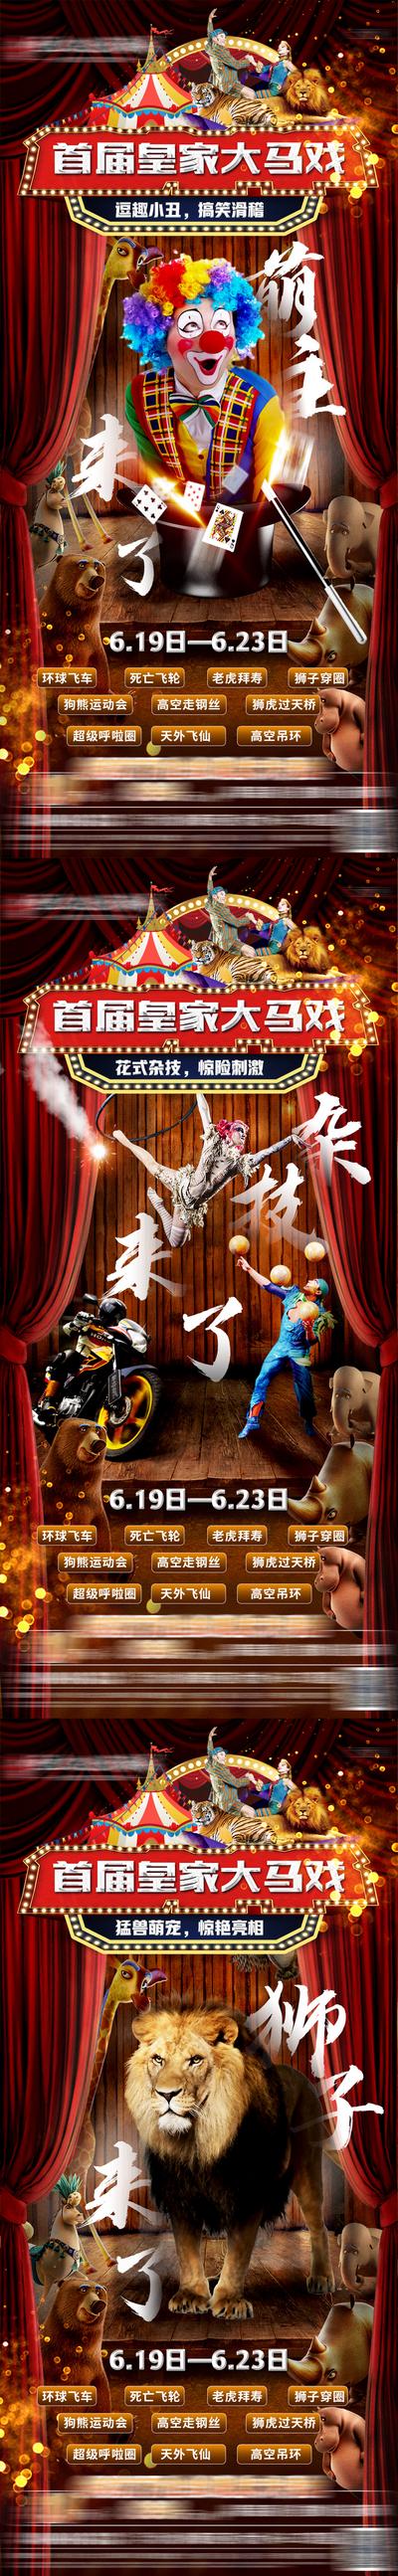 【南门网】海报 马戏团 小丑 狮子 杂技 系列